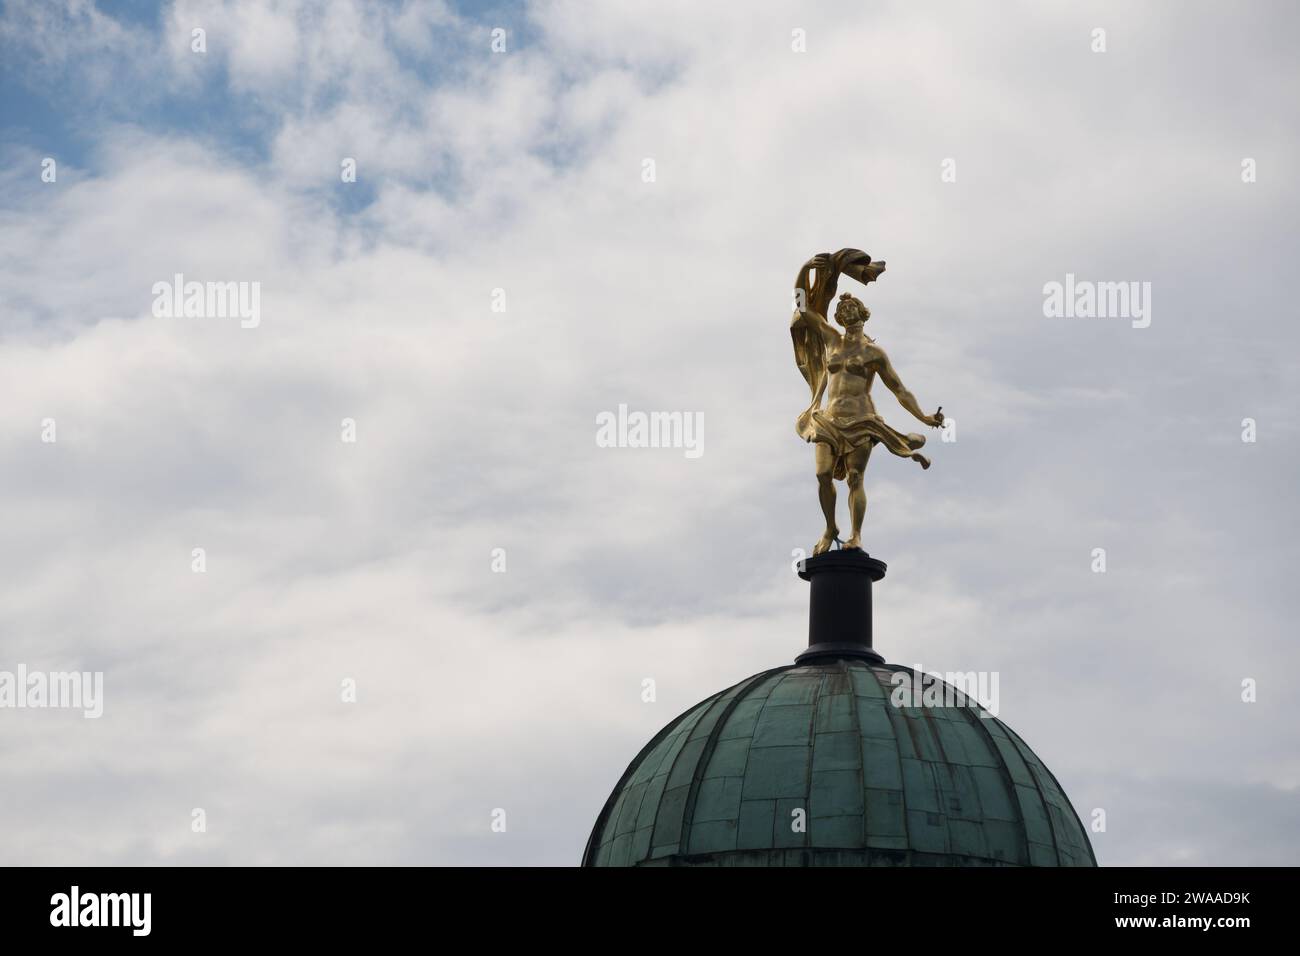 Una statua dorata brilla brillantemente in cima a una cupola classica di Potsdam, una splendida esposizione dell'eredità artistica e della grandezza storica della città. Foto Stock